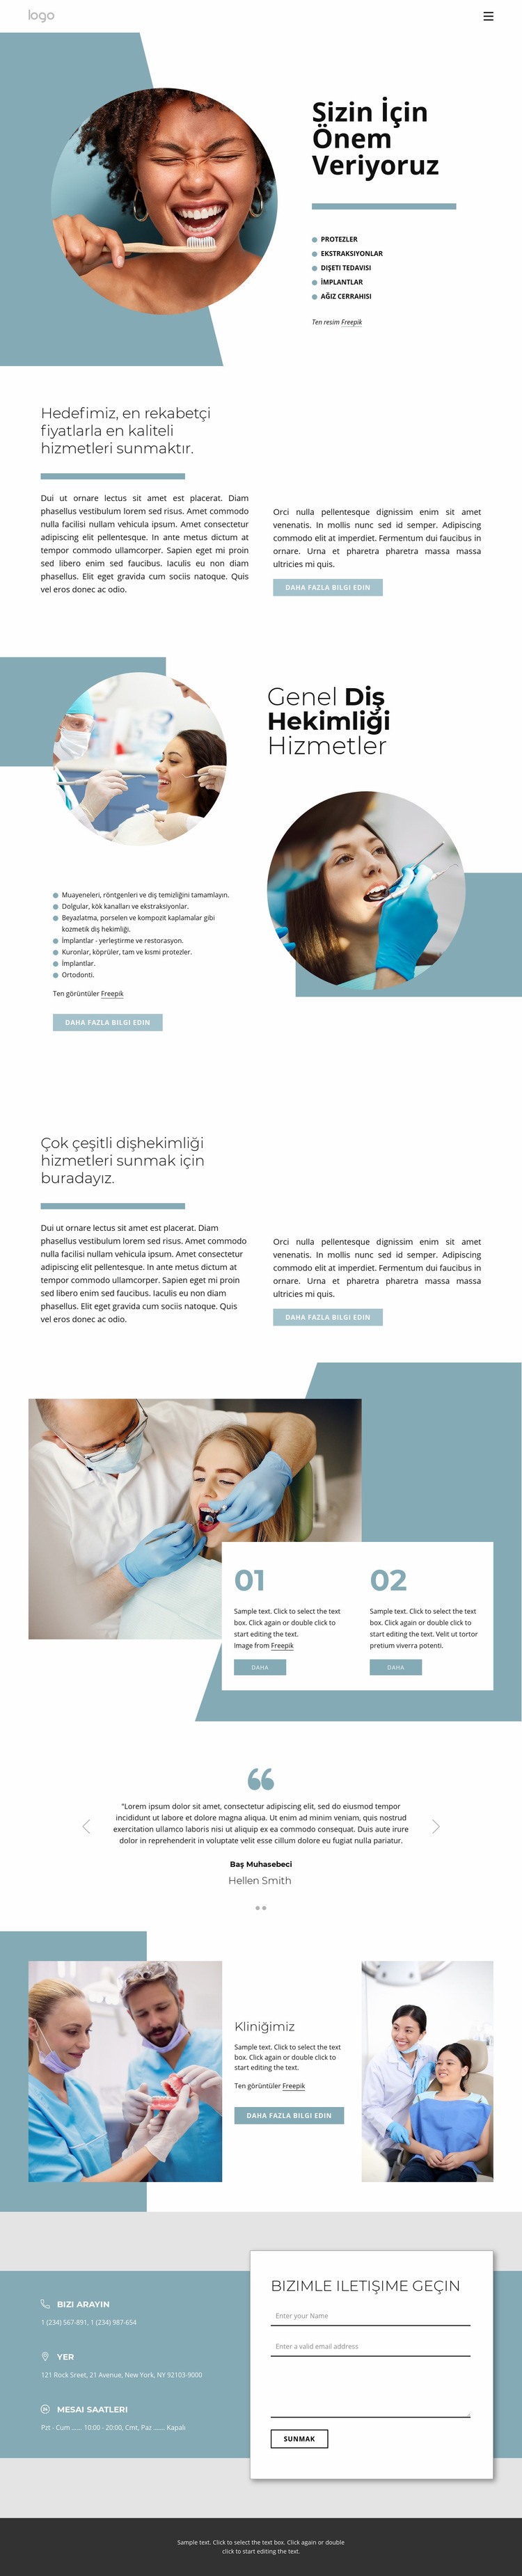 Yüksek kaliteli diş hizmetleri Web sitesi tasarımı